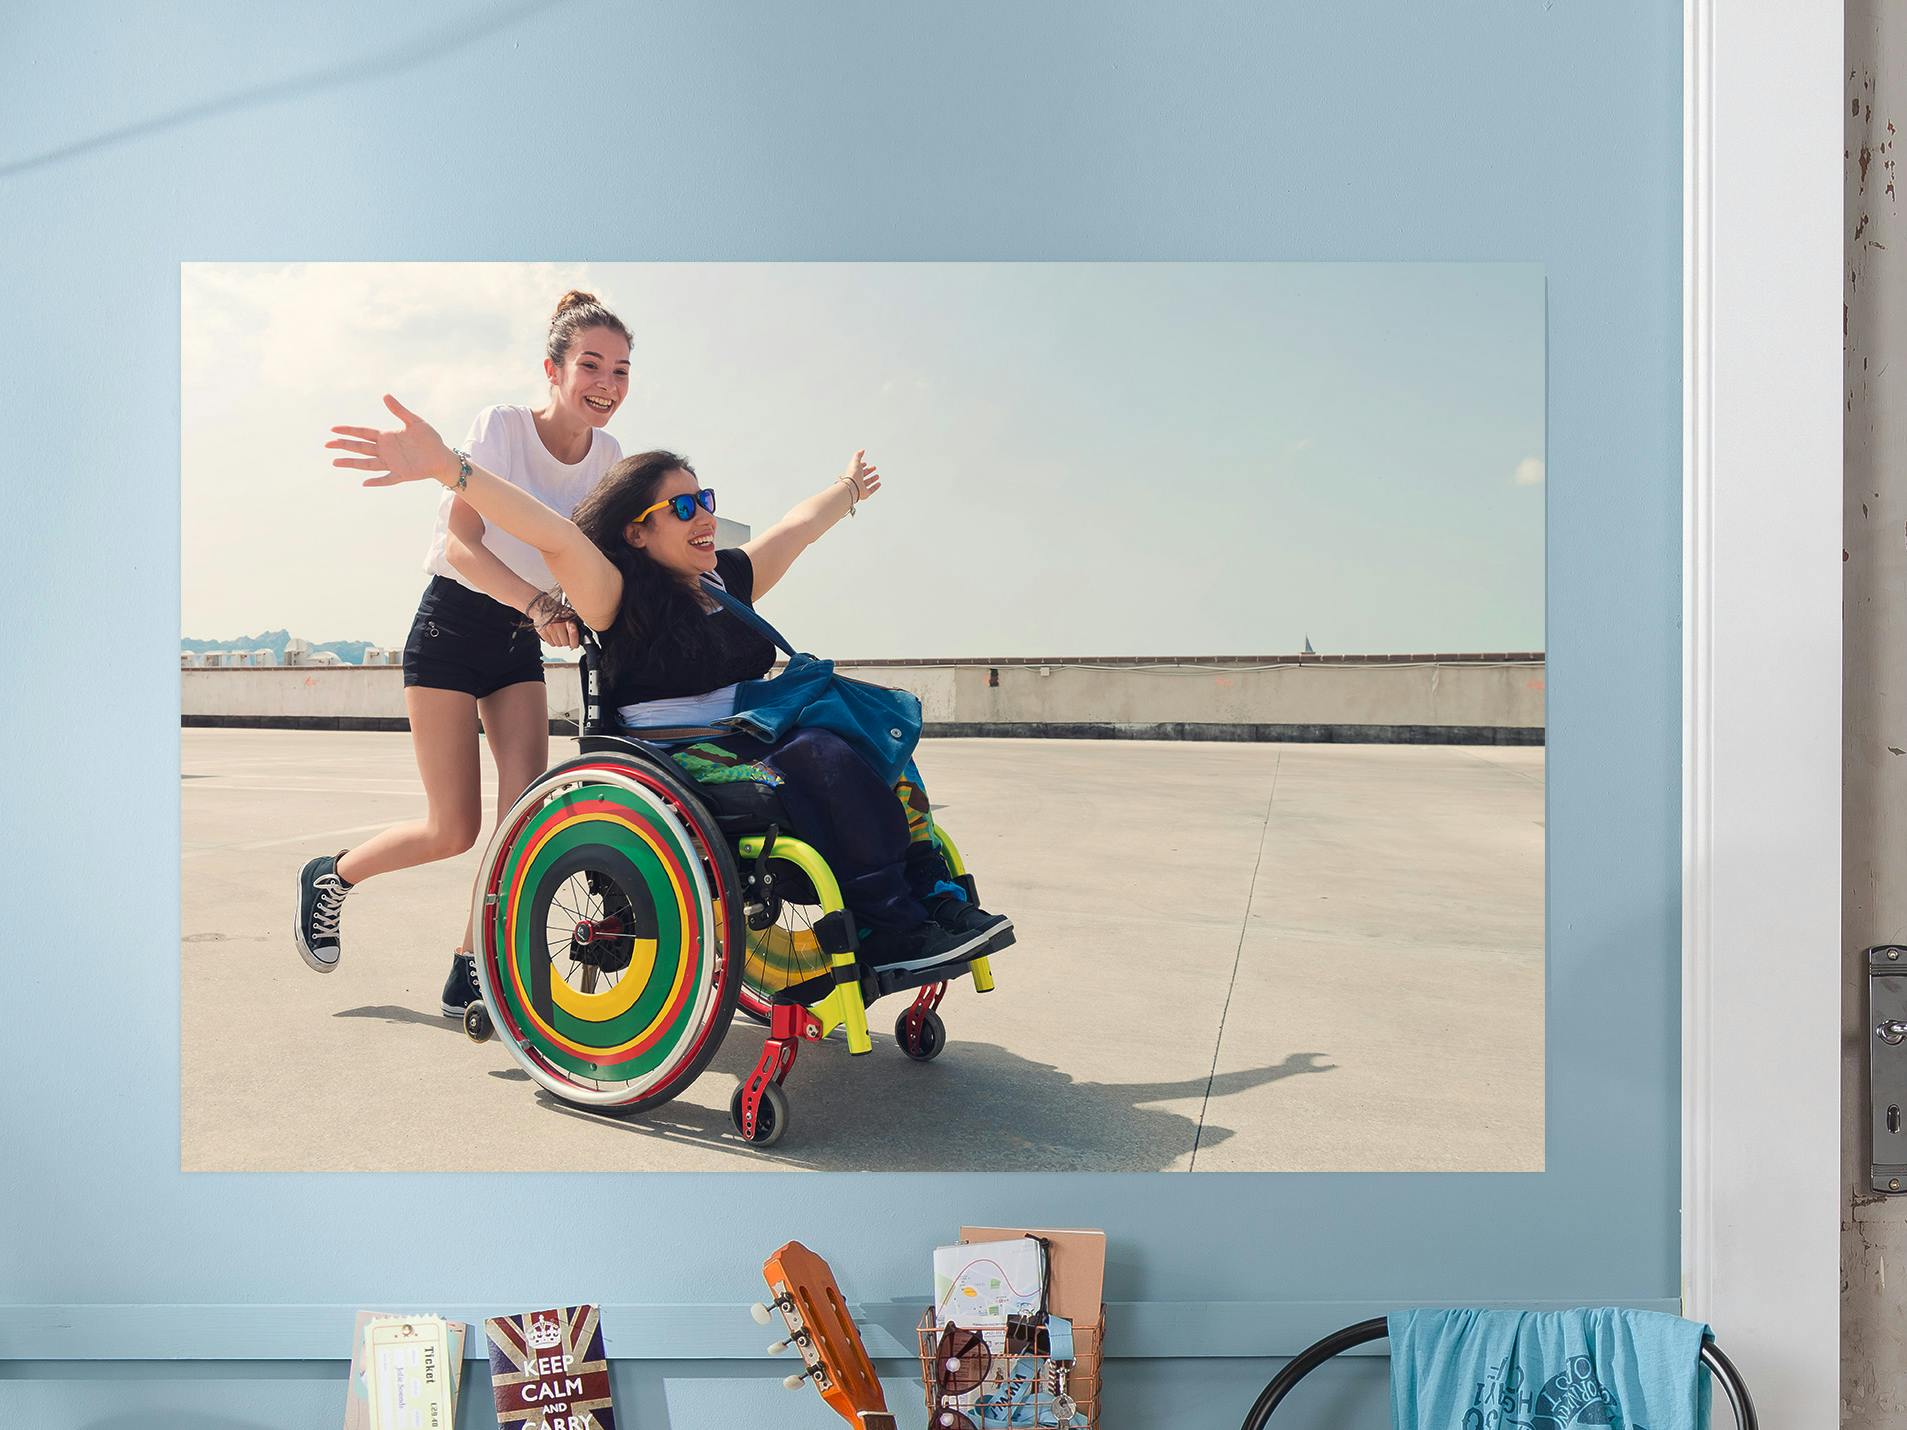 Fotoaffisch 70×50 cm med motiv av två skrattande väninnor, den ena sitter i en rullstol och den andra skjuter på den